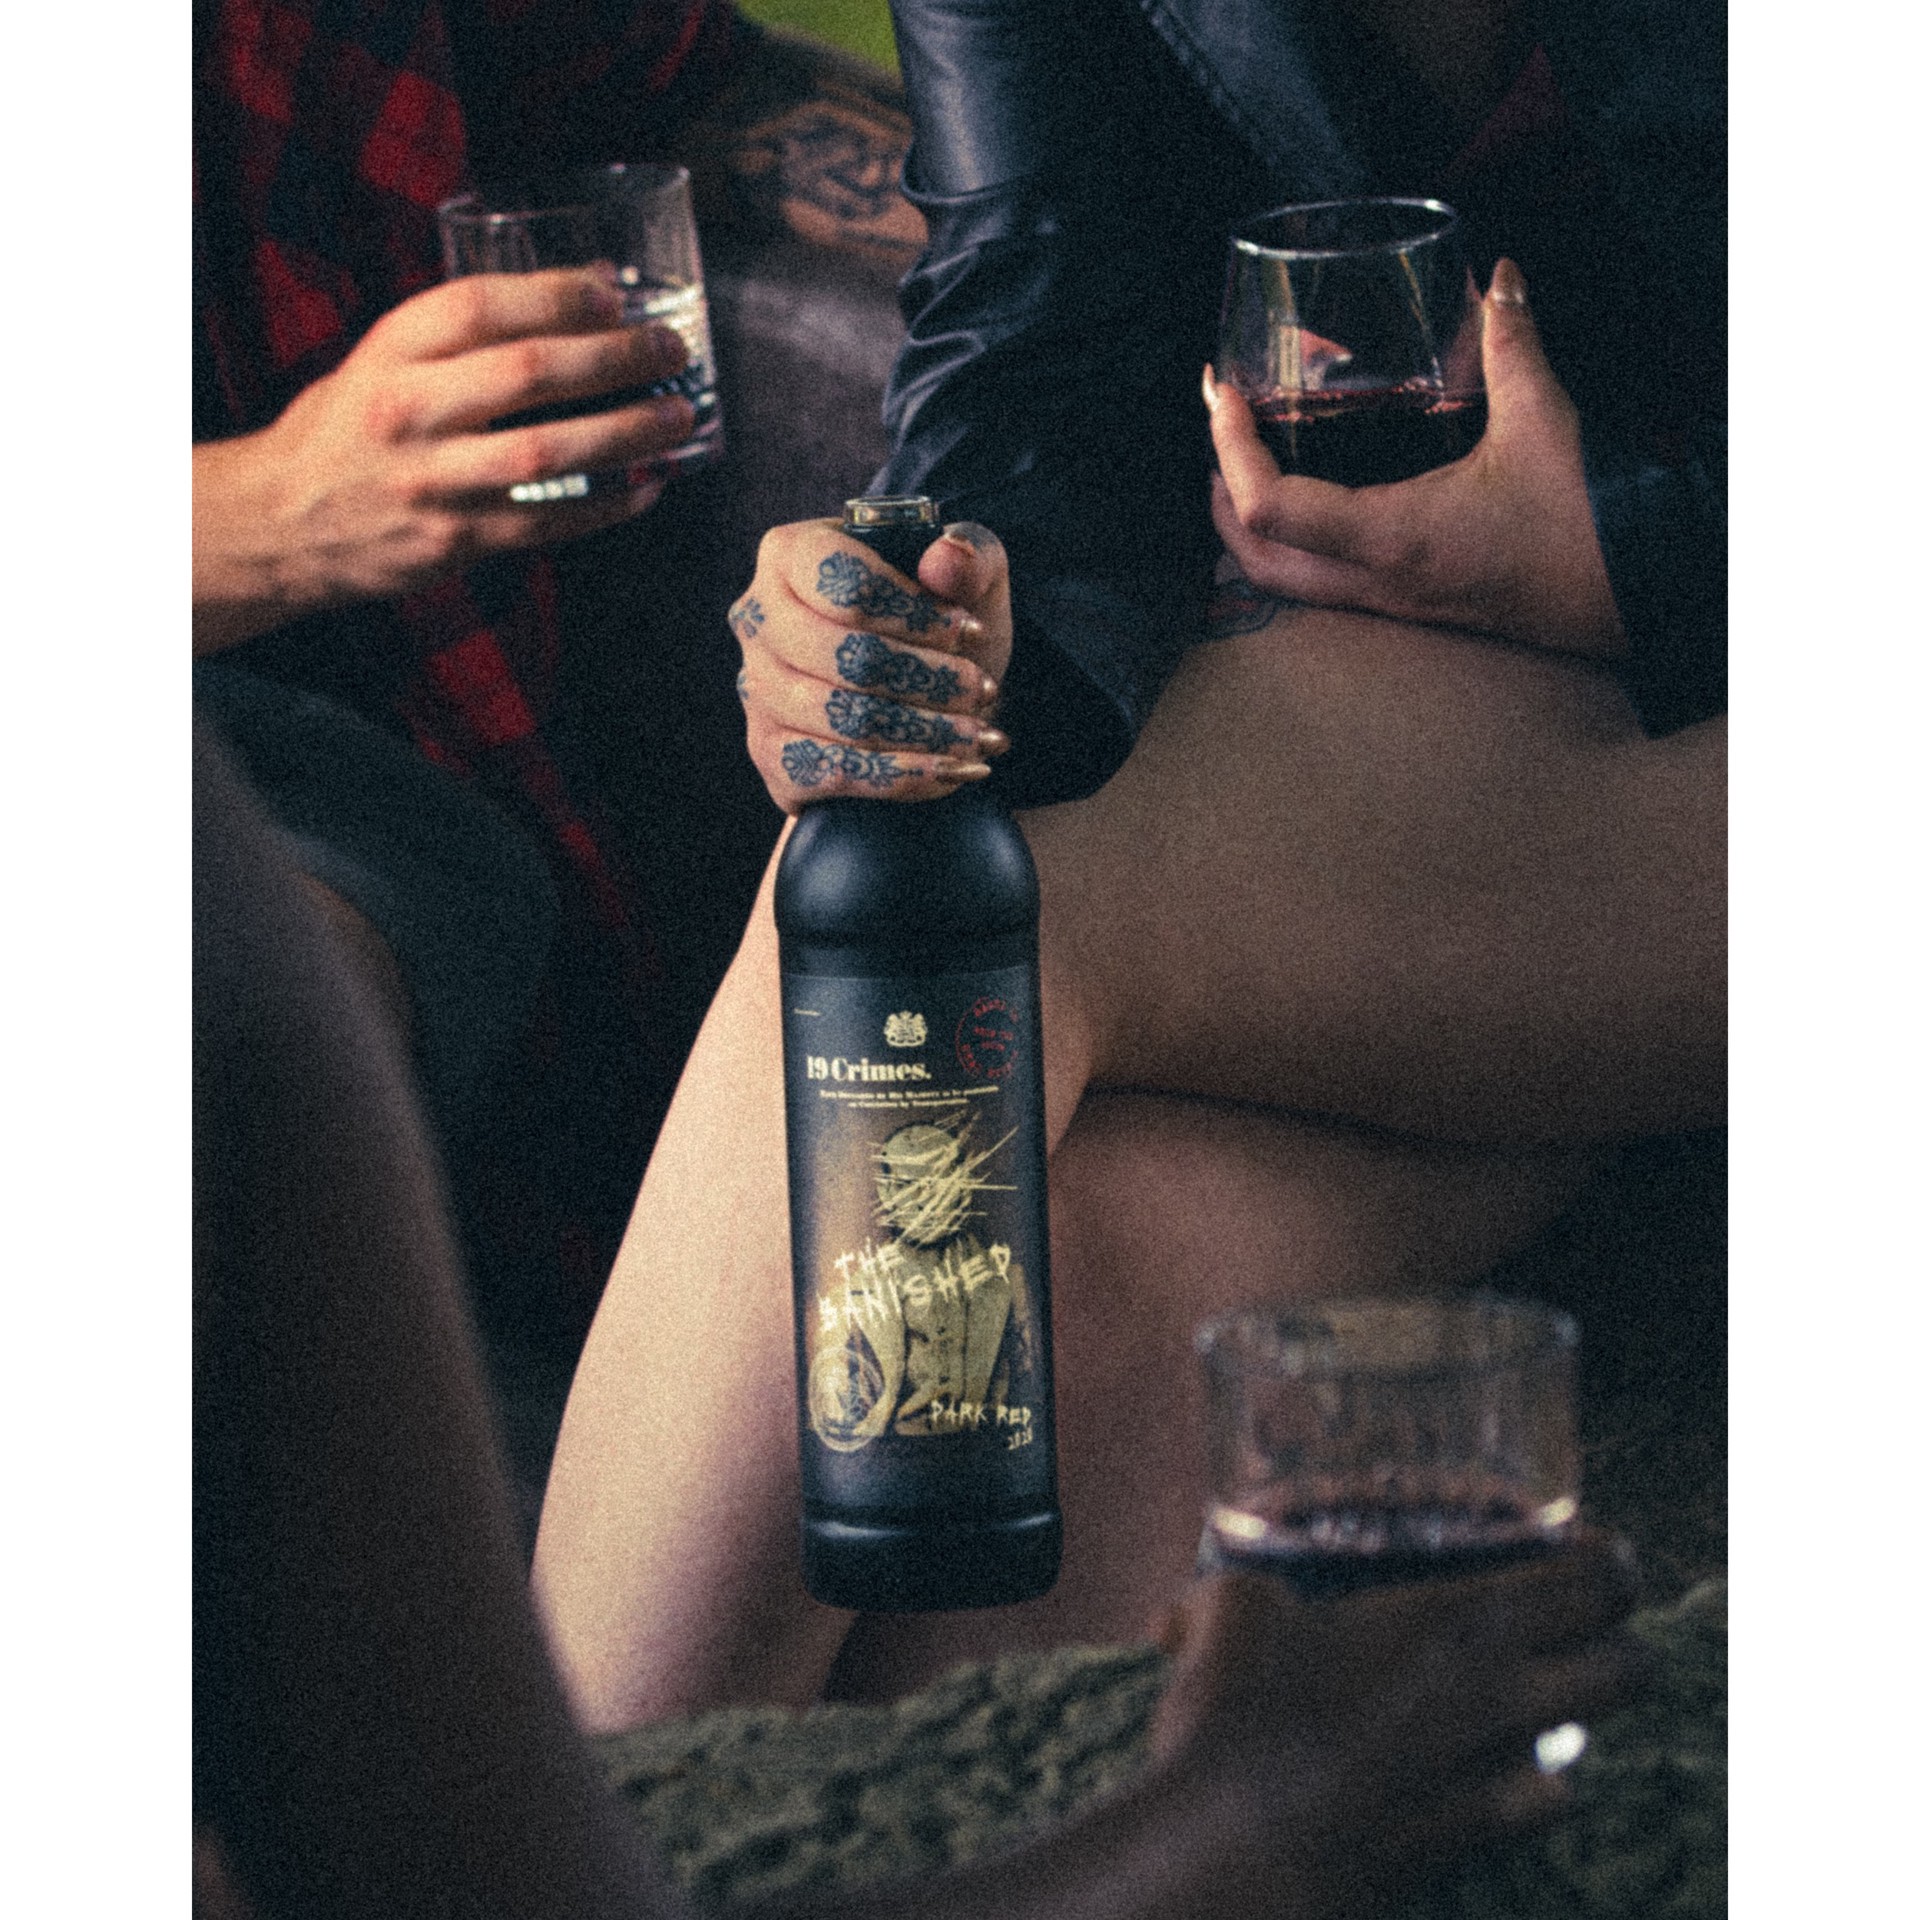 slide 4 of 4, 19 Crimes The Banished Dark Red Wine - 750ml Bottle, 750 ml